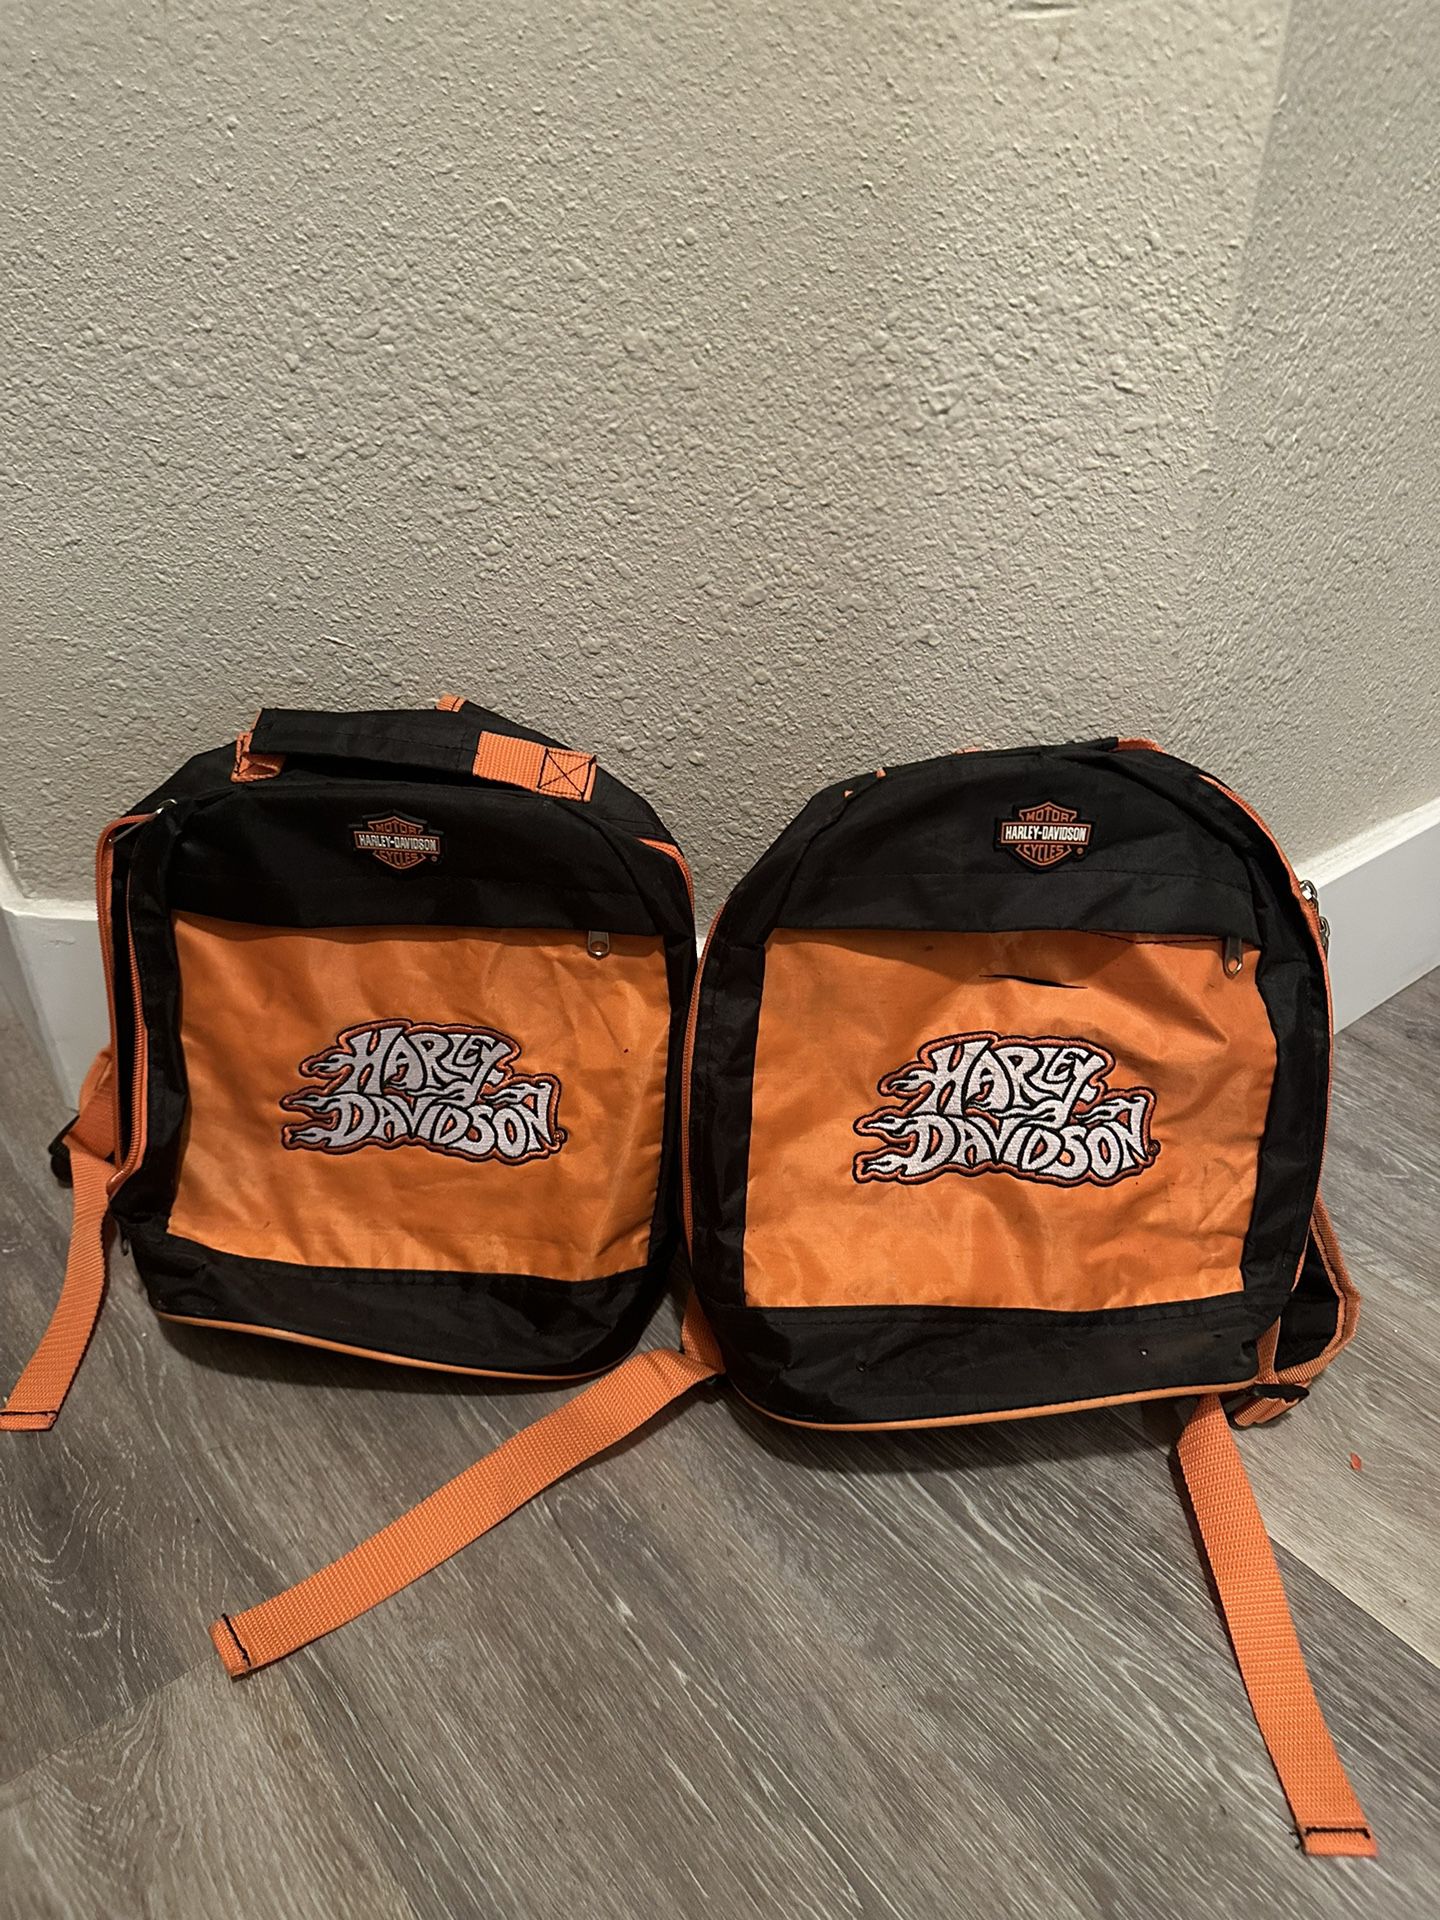 Harley-Davidson Backpacks